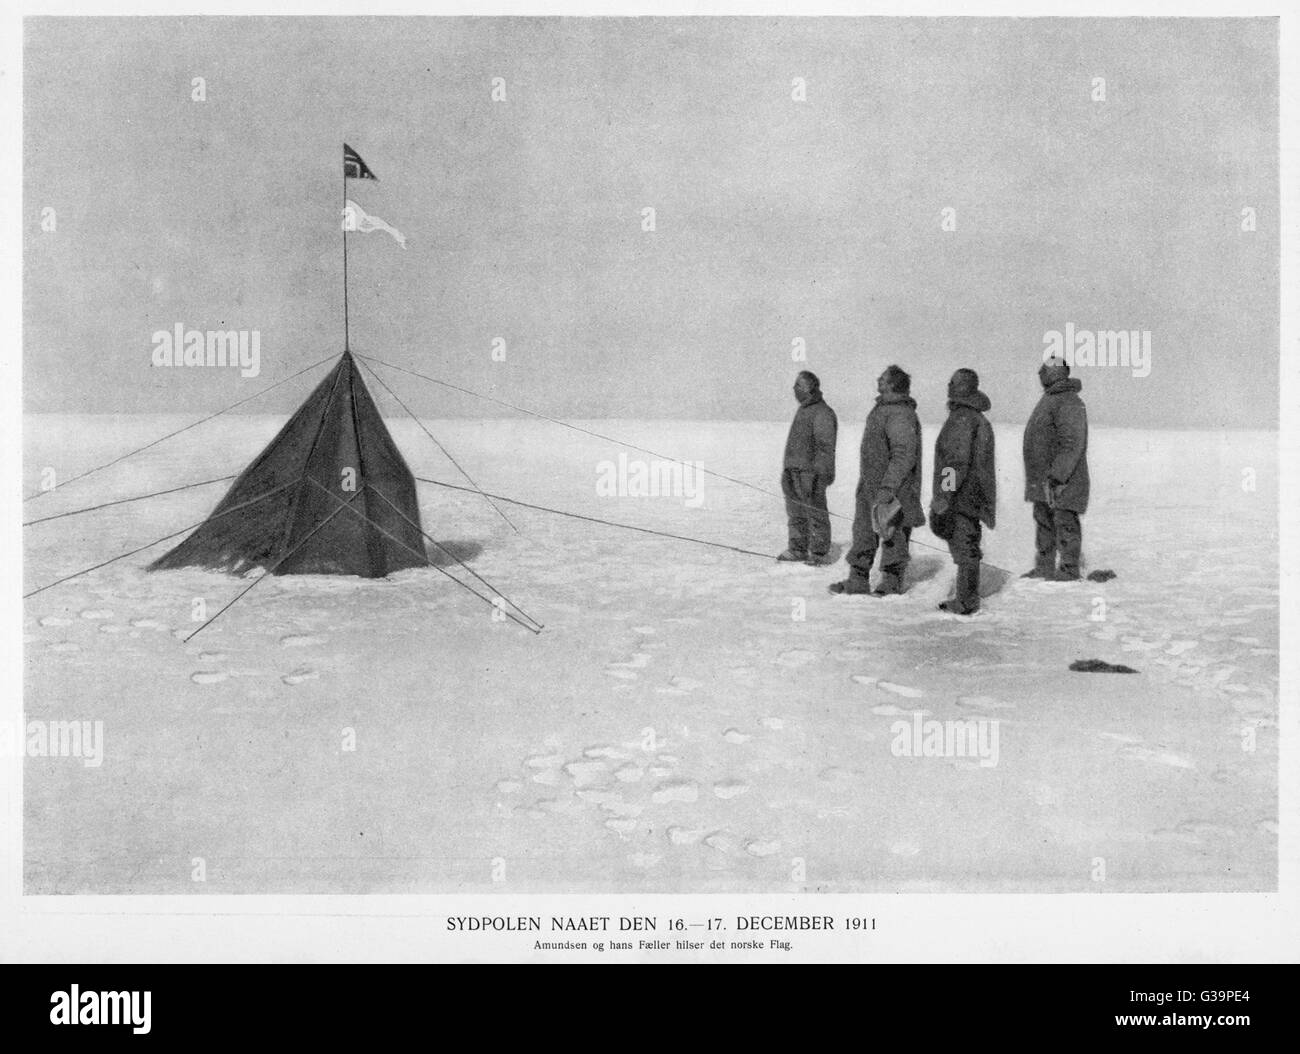 Roald Amundsen als erster den Südpol zu erreichen dies auf 14. Dezember 1911 und sicher nach Hause zurück.  Anhebung der norwegischen Flagge am Südpol.     Datum: 16.-17. Dezember 1911 Stockfoto